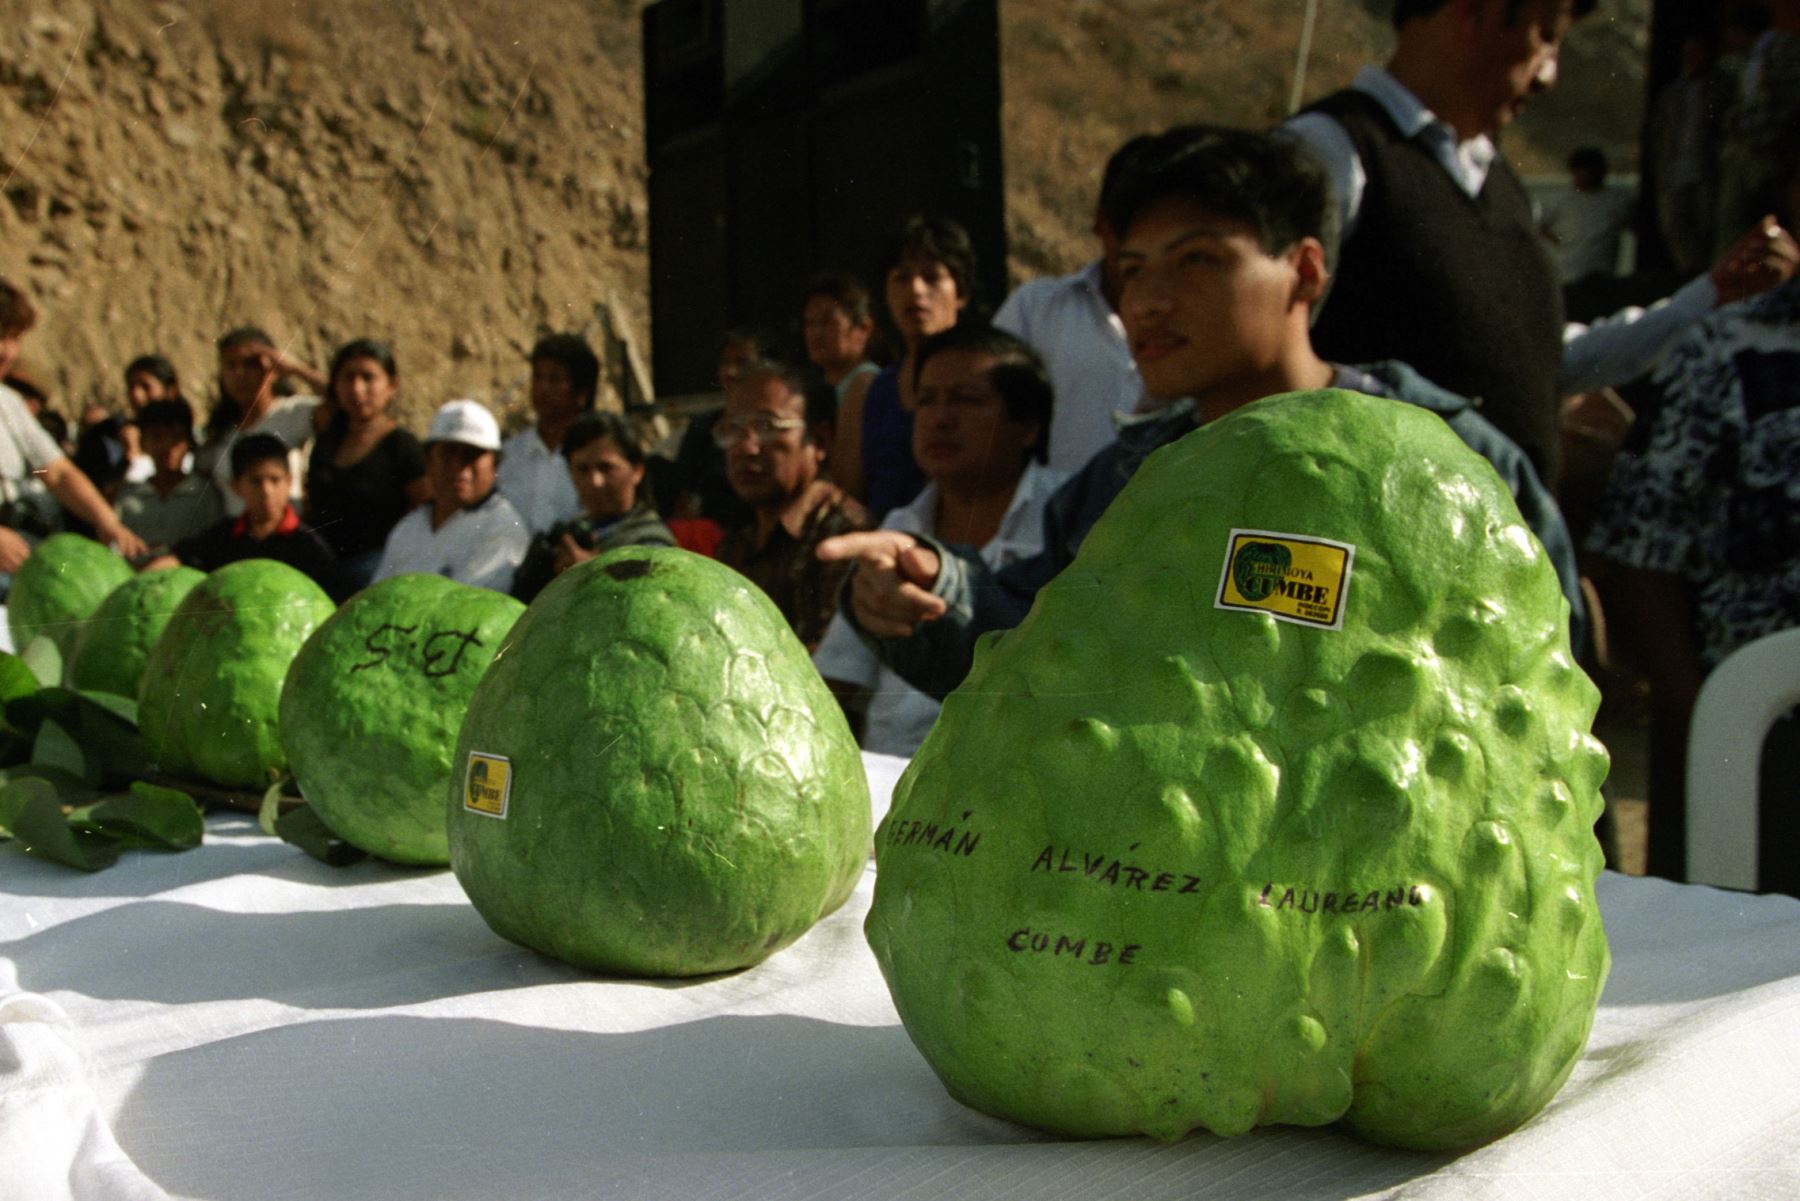 La chirimoya es uno de los productos con mayor potencial exportador de la región Lima. ANDINA/archivo